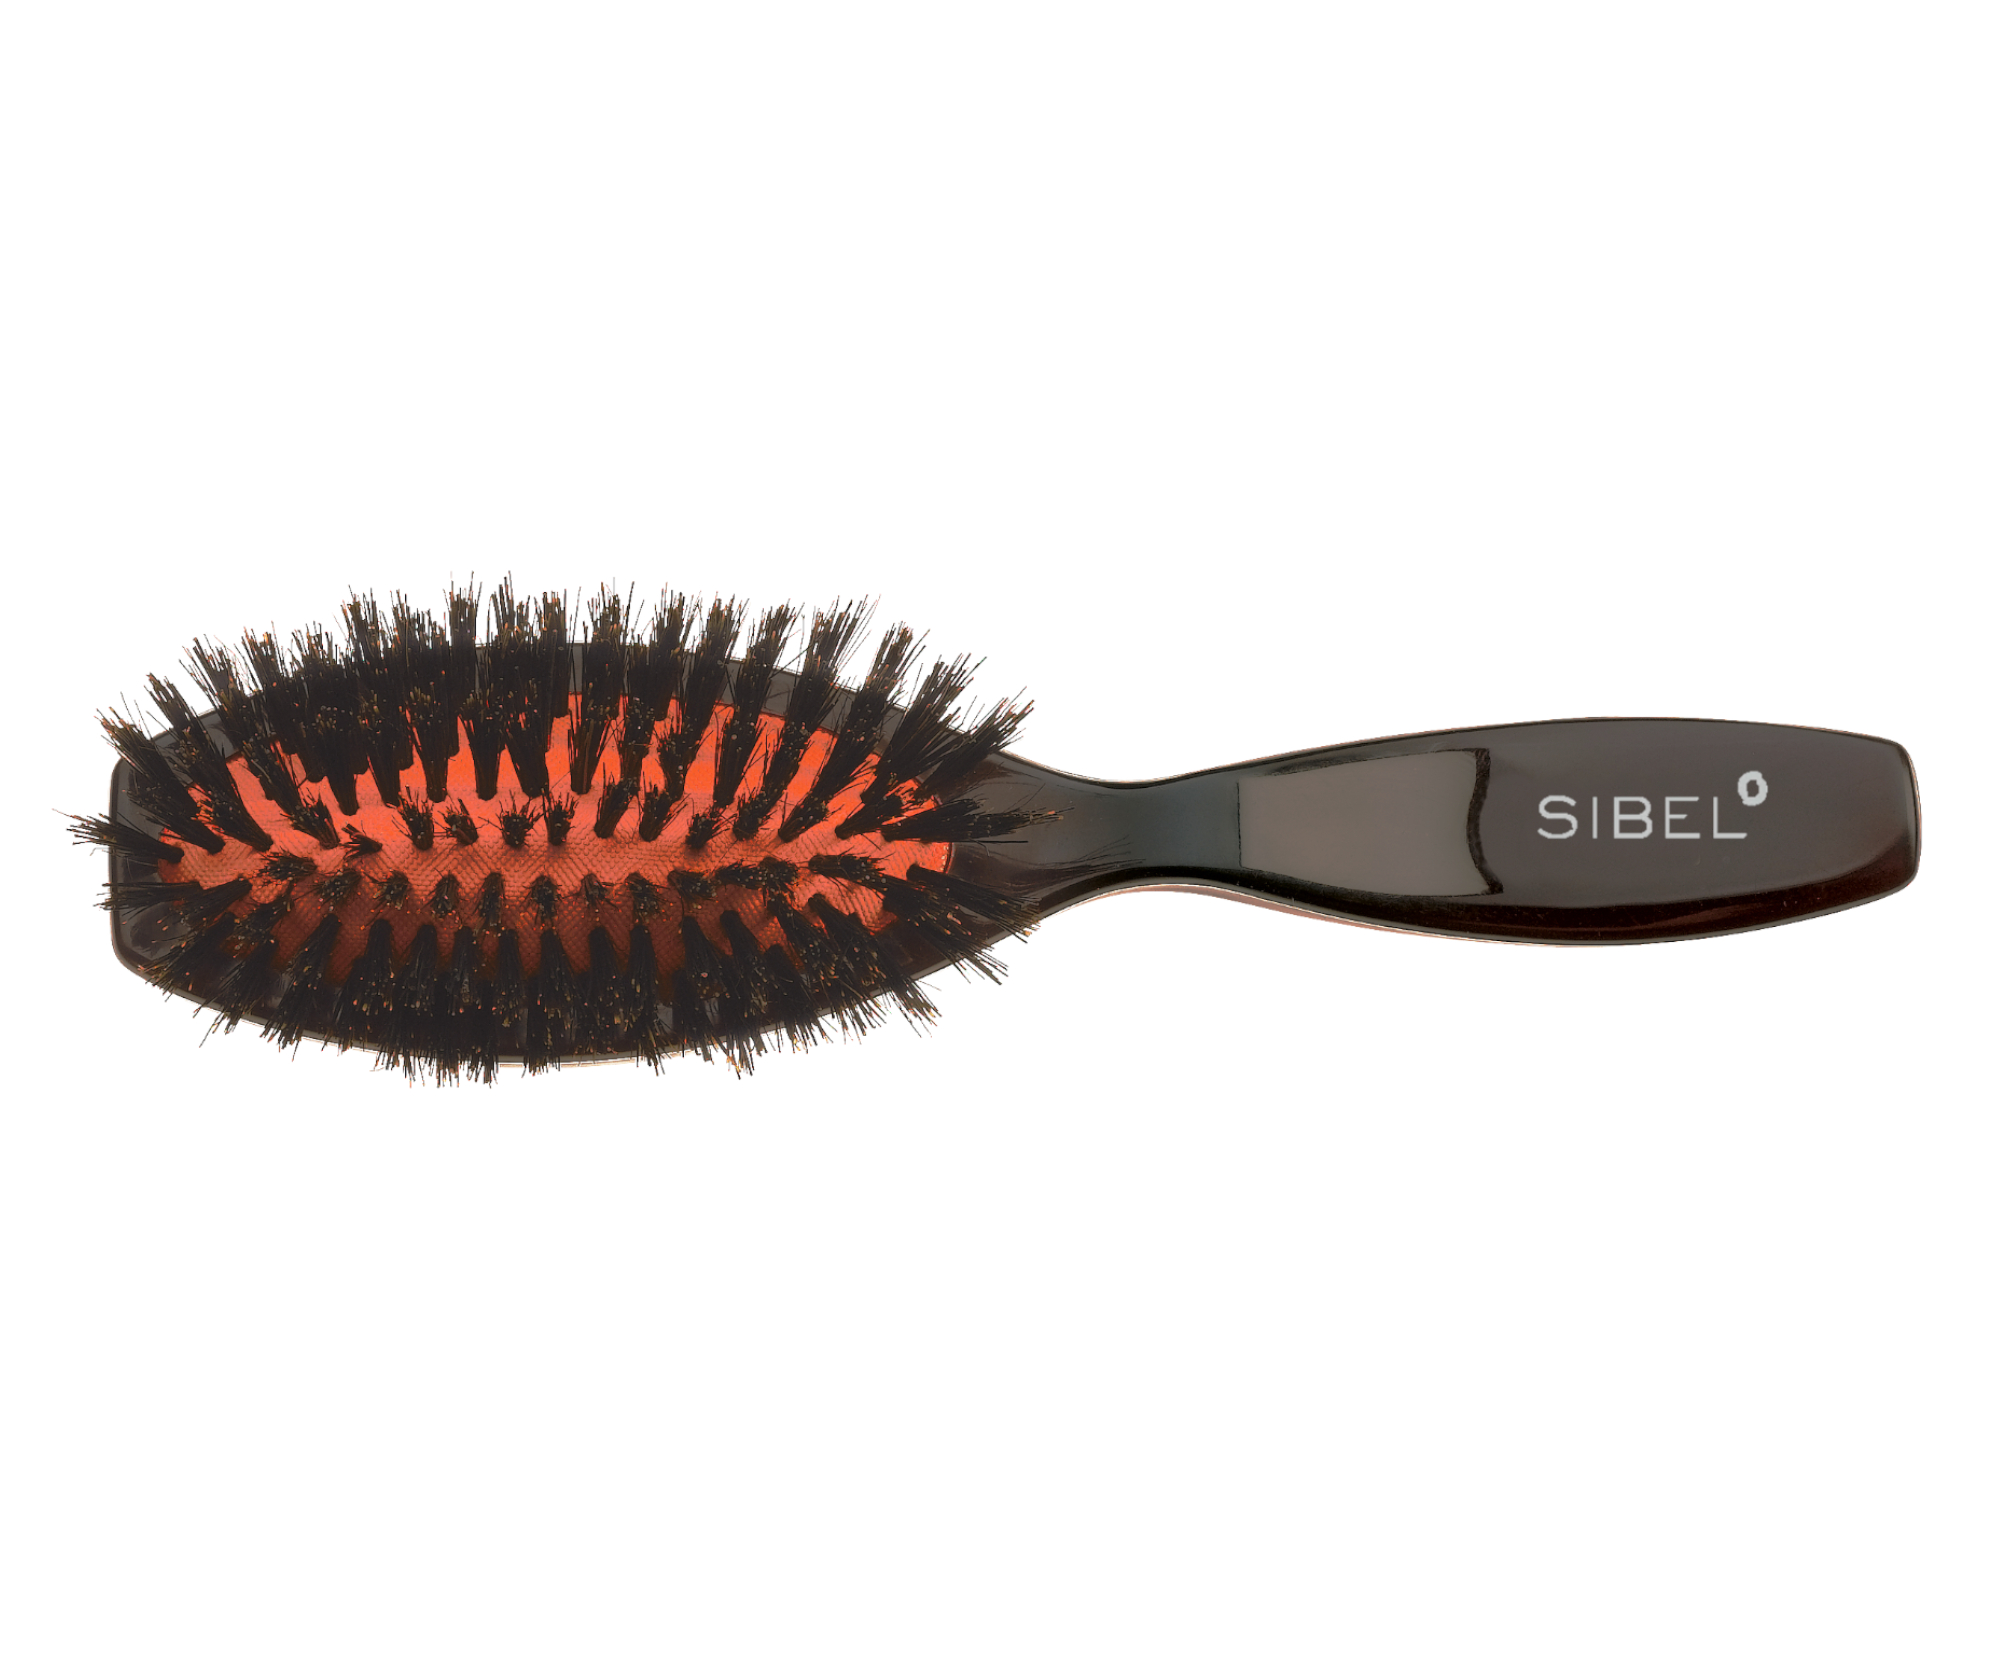 Oválný kartáč na vlasy s kančími štětinami Sibel Classic 74 - 58 x 222 mm (8454552) + dárek zdarma